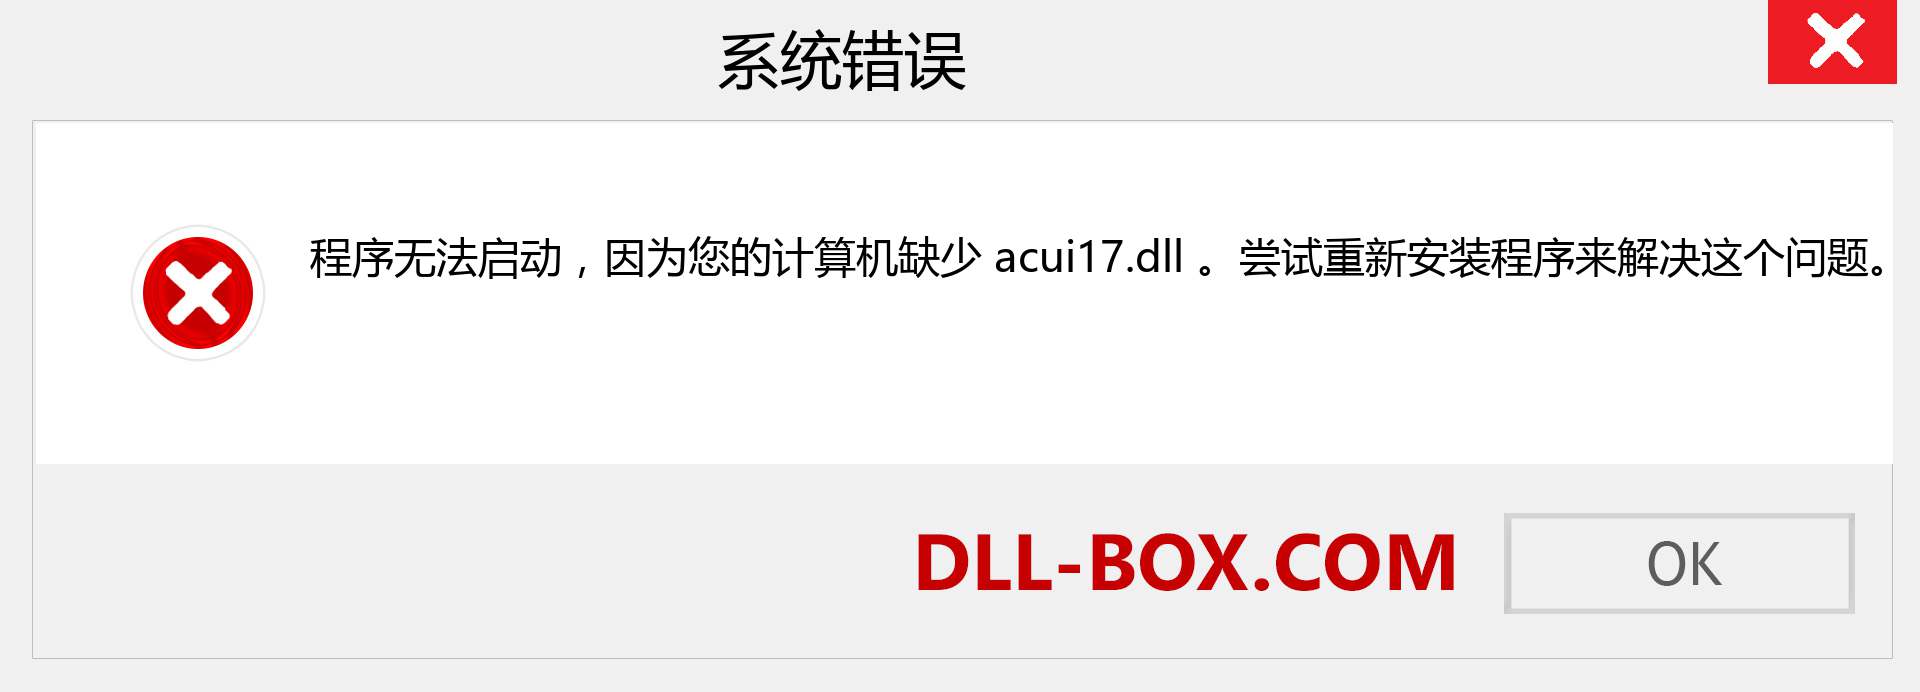 acui17.dll 文件丢失？。 适用于 Windows 7、8、10 的下载 - 修复 Windows、照片、图像上的 acui17 dll 丢失错误